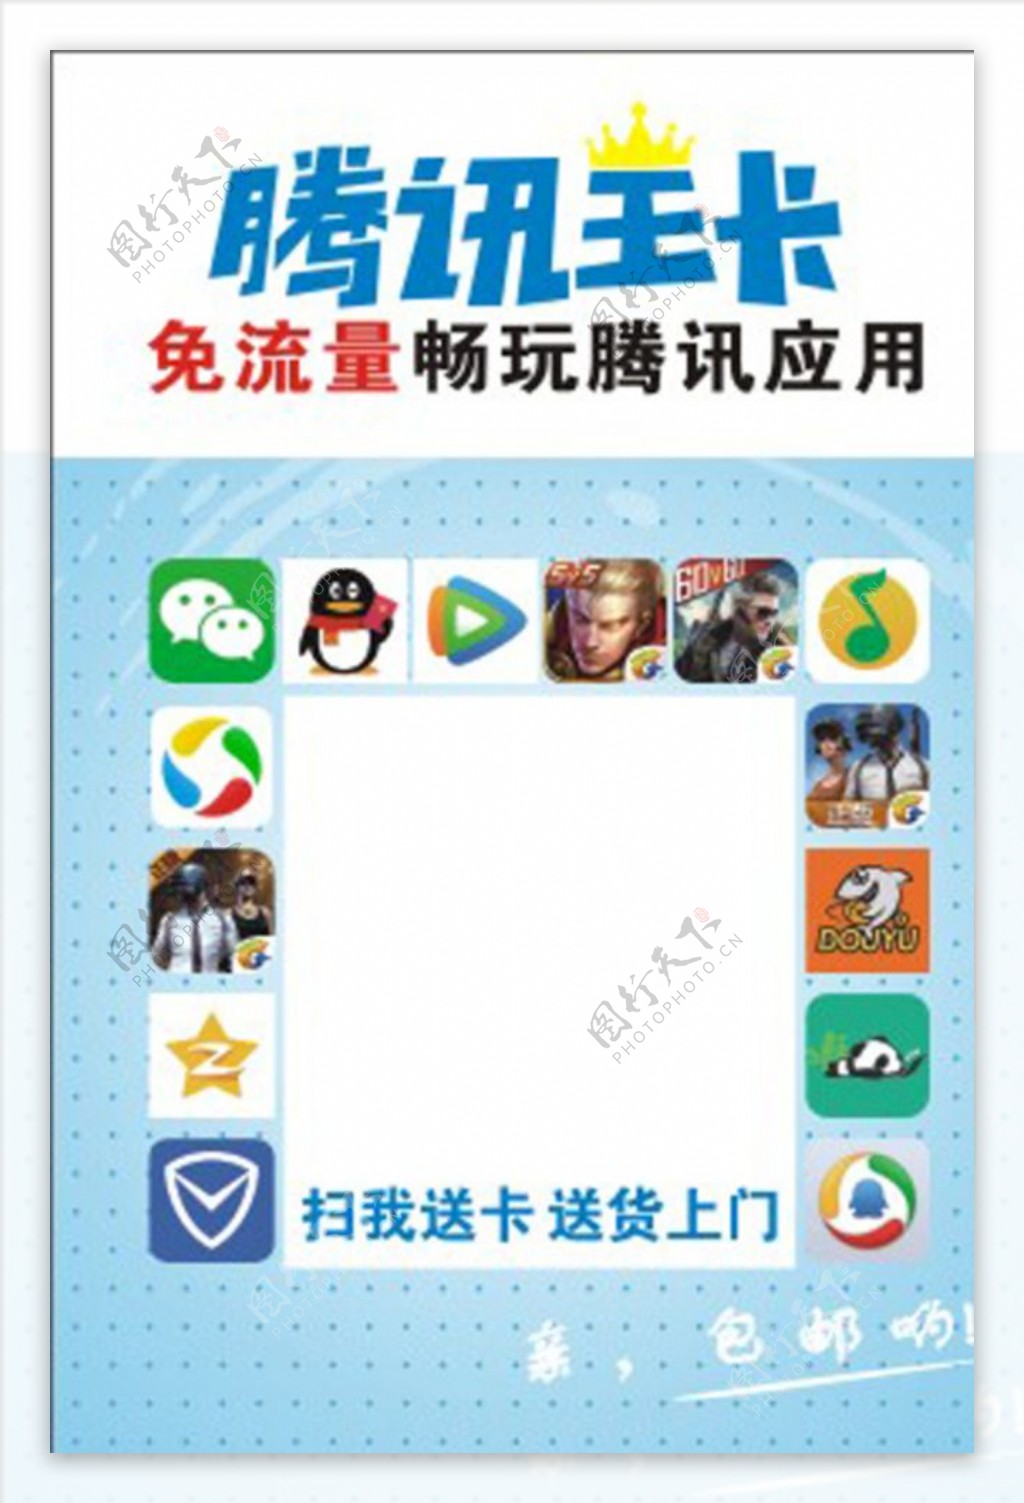 腾讯王卡二维码台卡画面